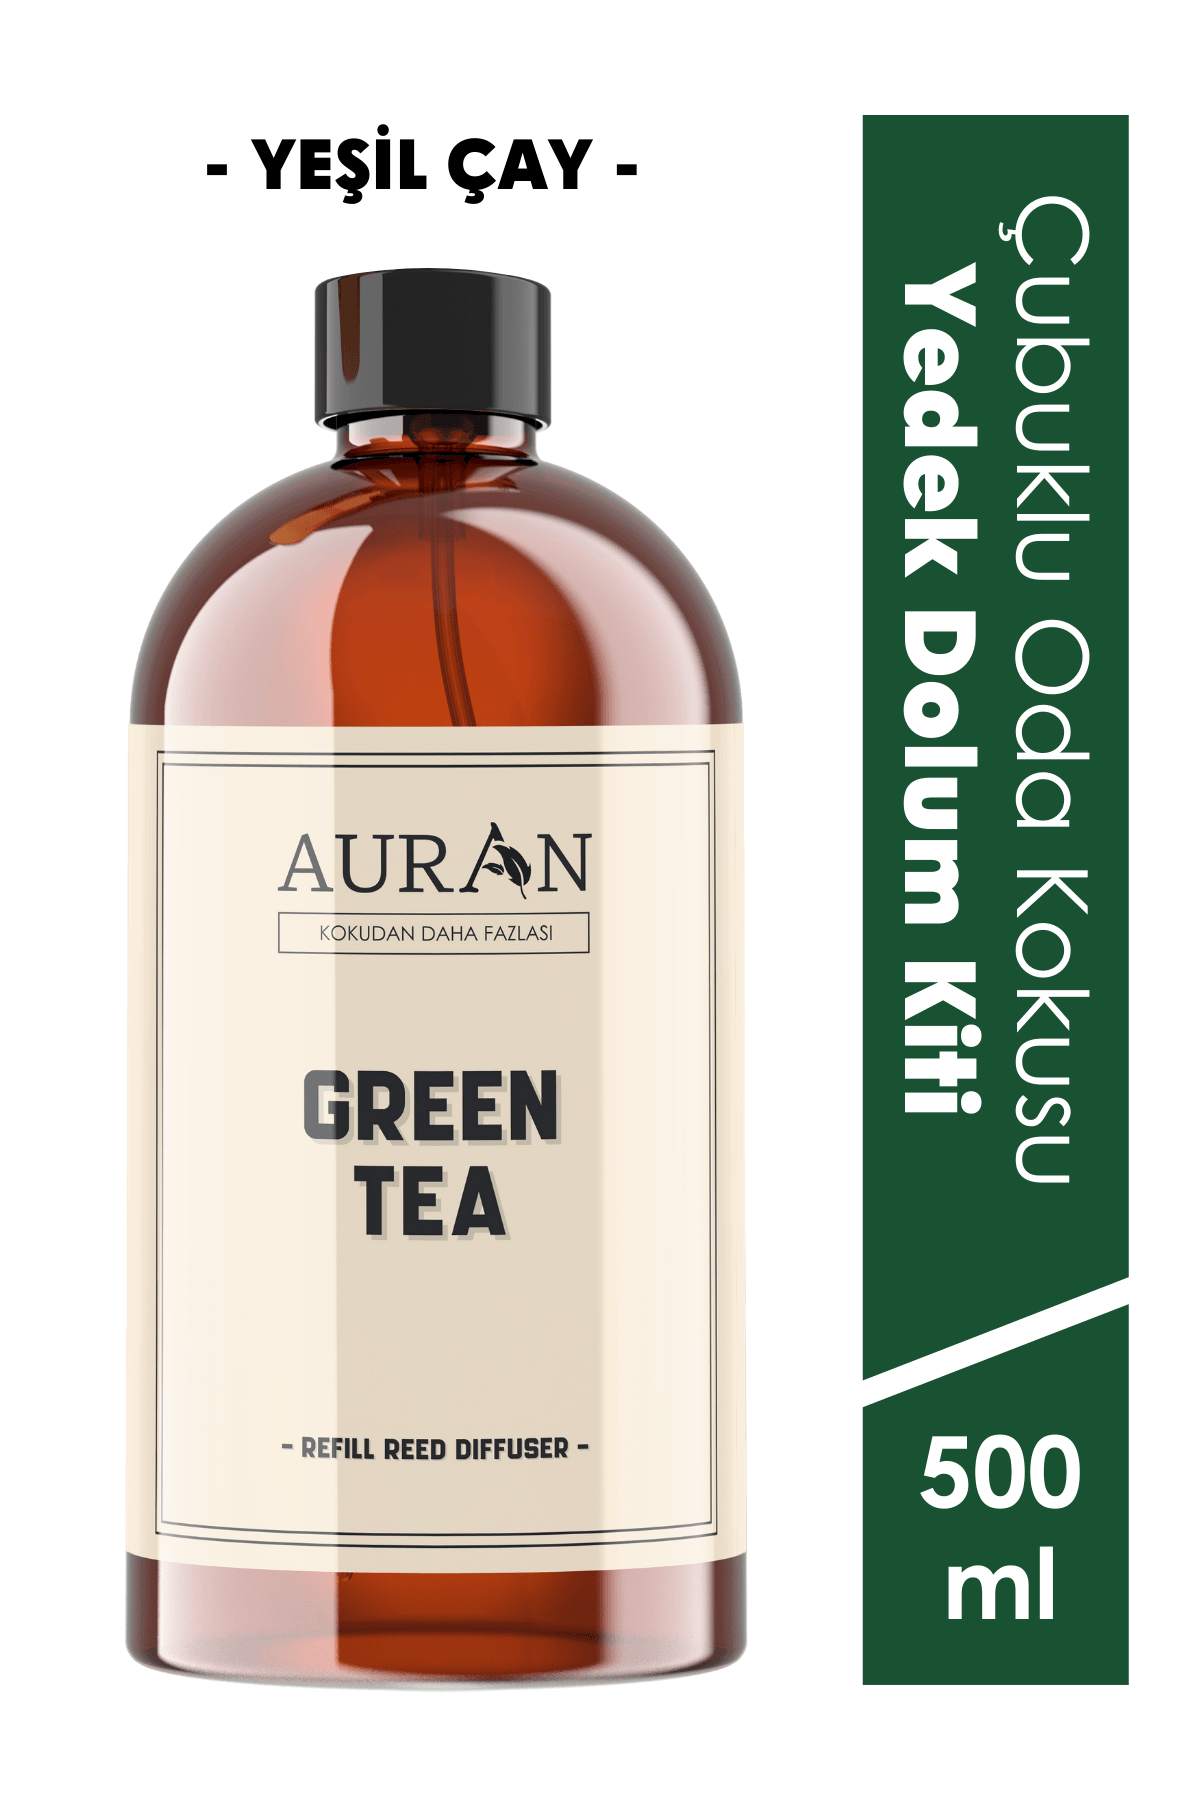 Yeşil Çay Çubuklu Oda Ve Ortam Kokusu Esansı Yedek Dolum Green Tea 500ml